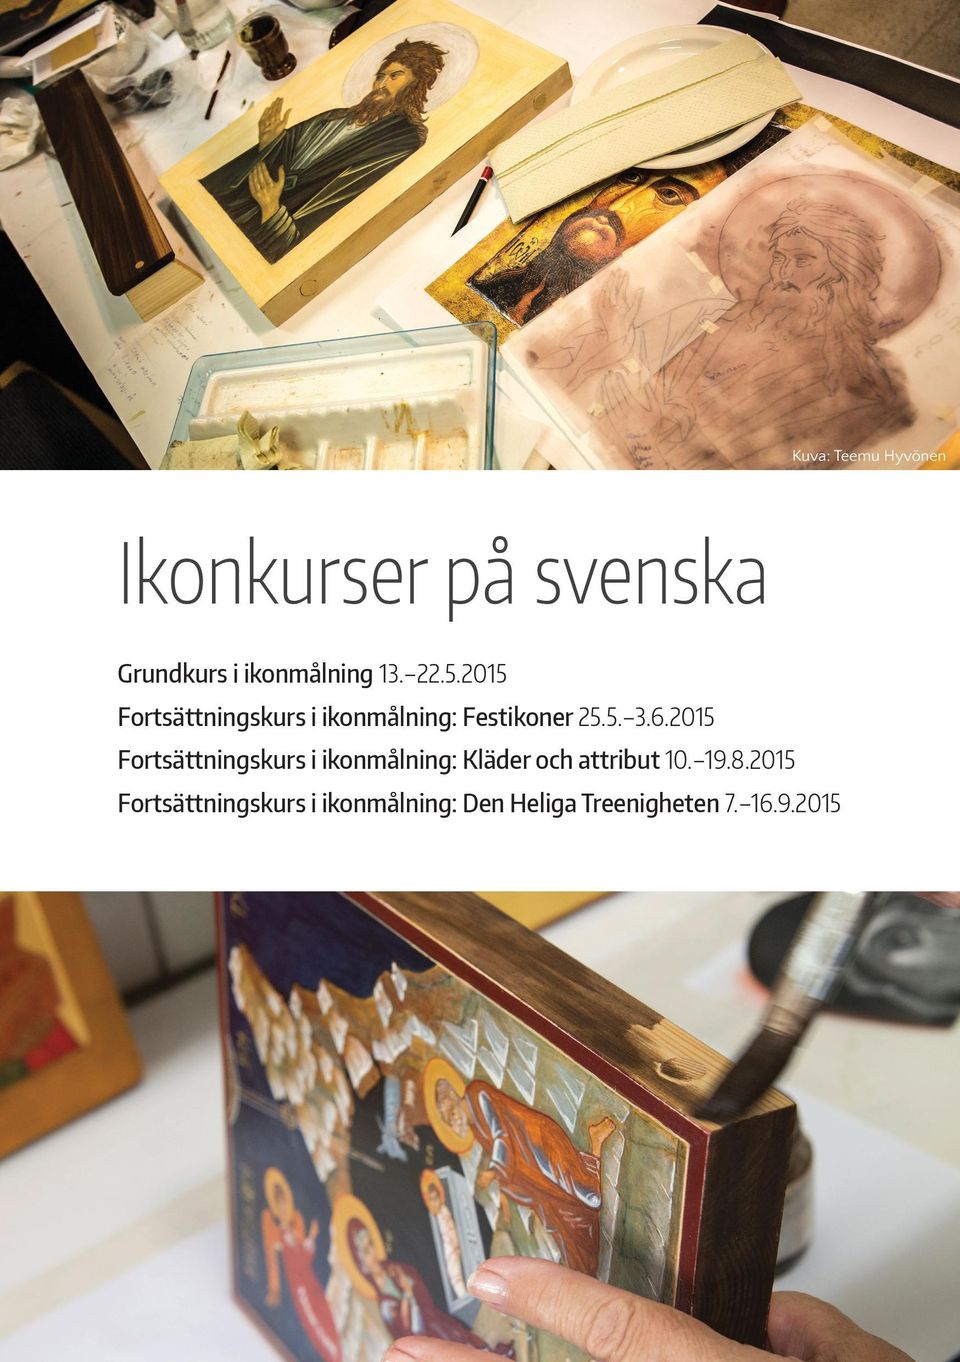 2015 Fortsättningskurs i ikonmålning: Kläder och attribut 10. 19.8.